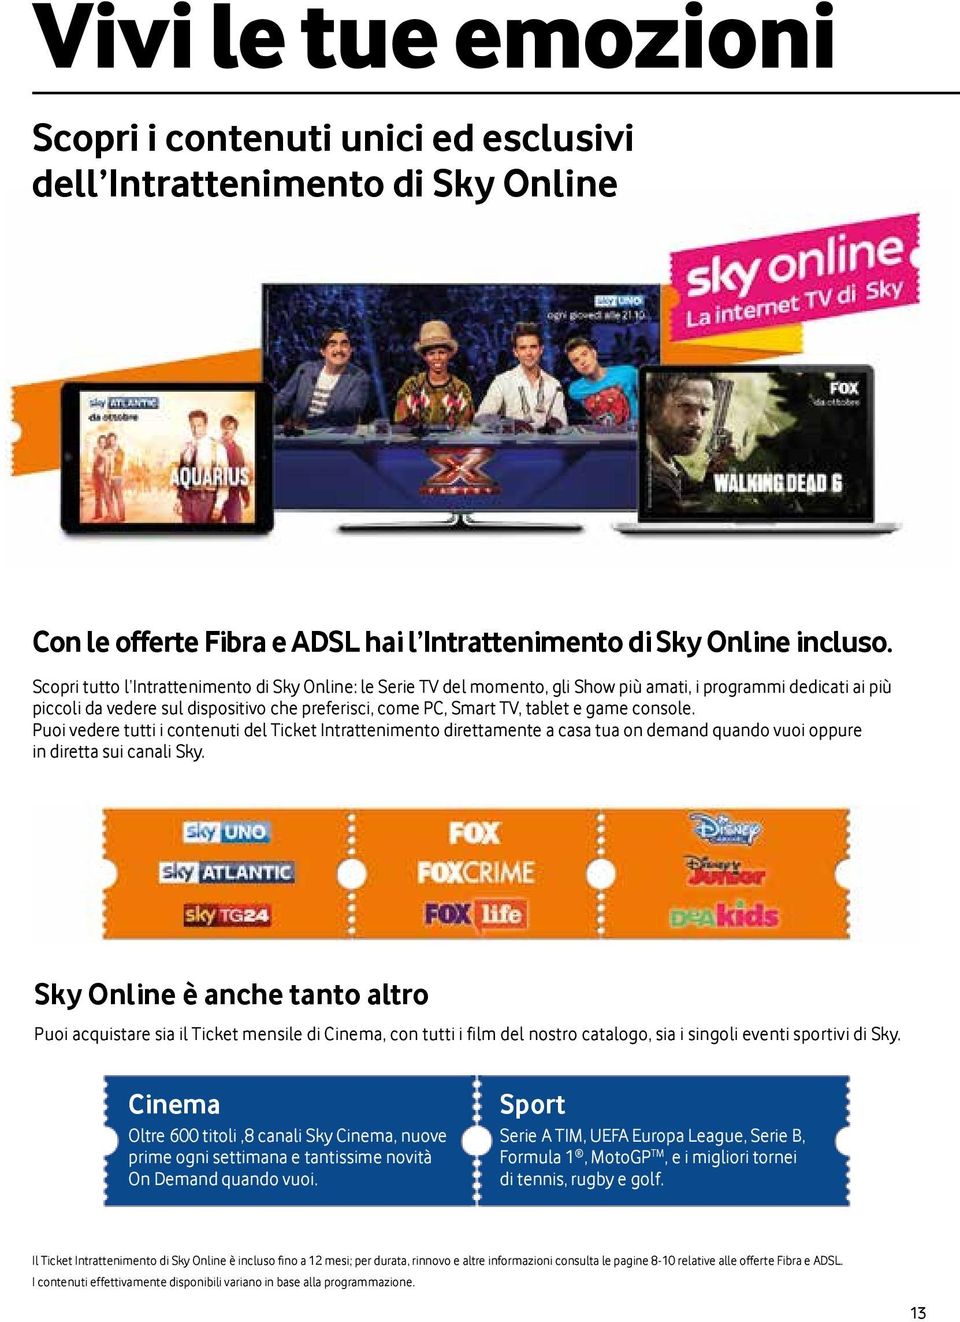 game console. Puoi vedere tutti i contenuti del Ticket Intrattenimento direttamente a casa tua on demand quando vuoi oppure in diretta sui canali Sky.